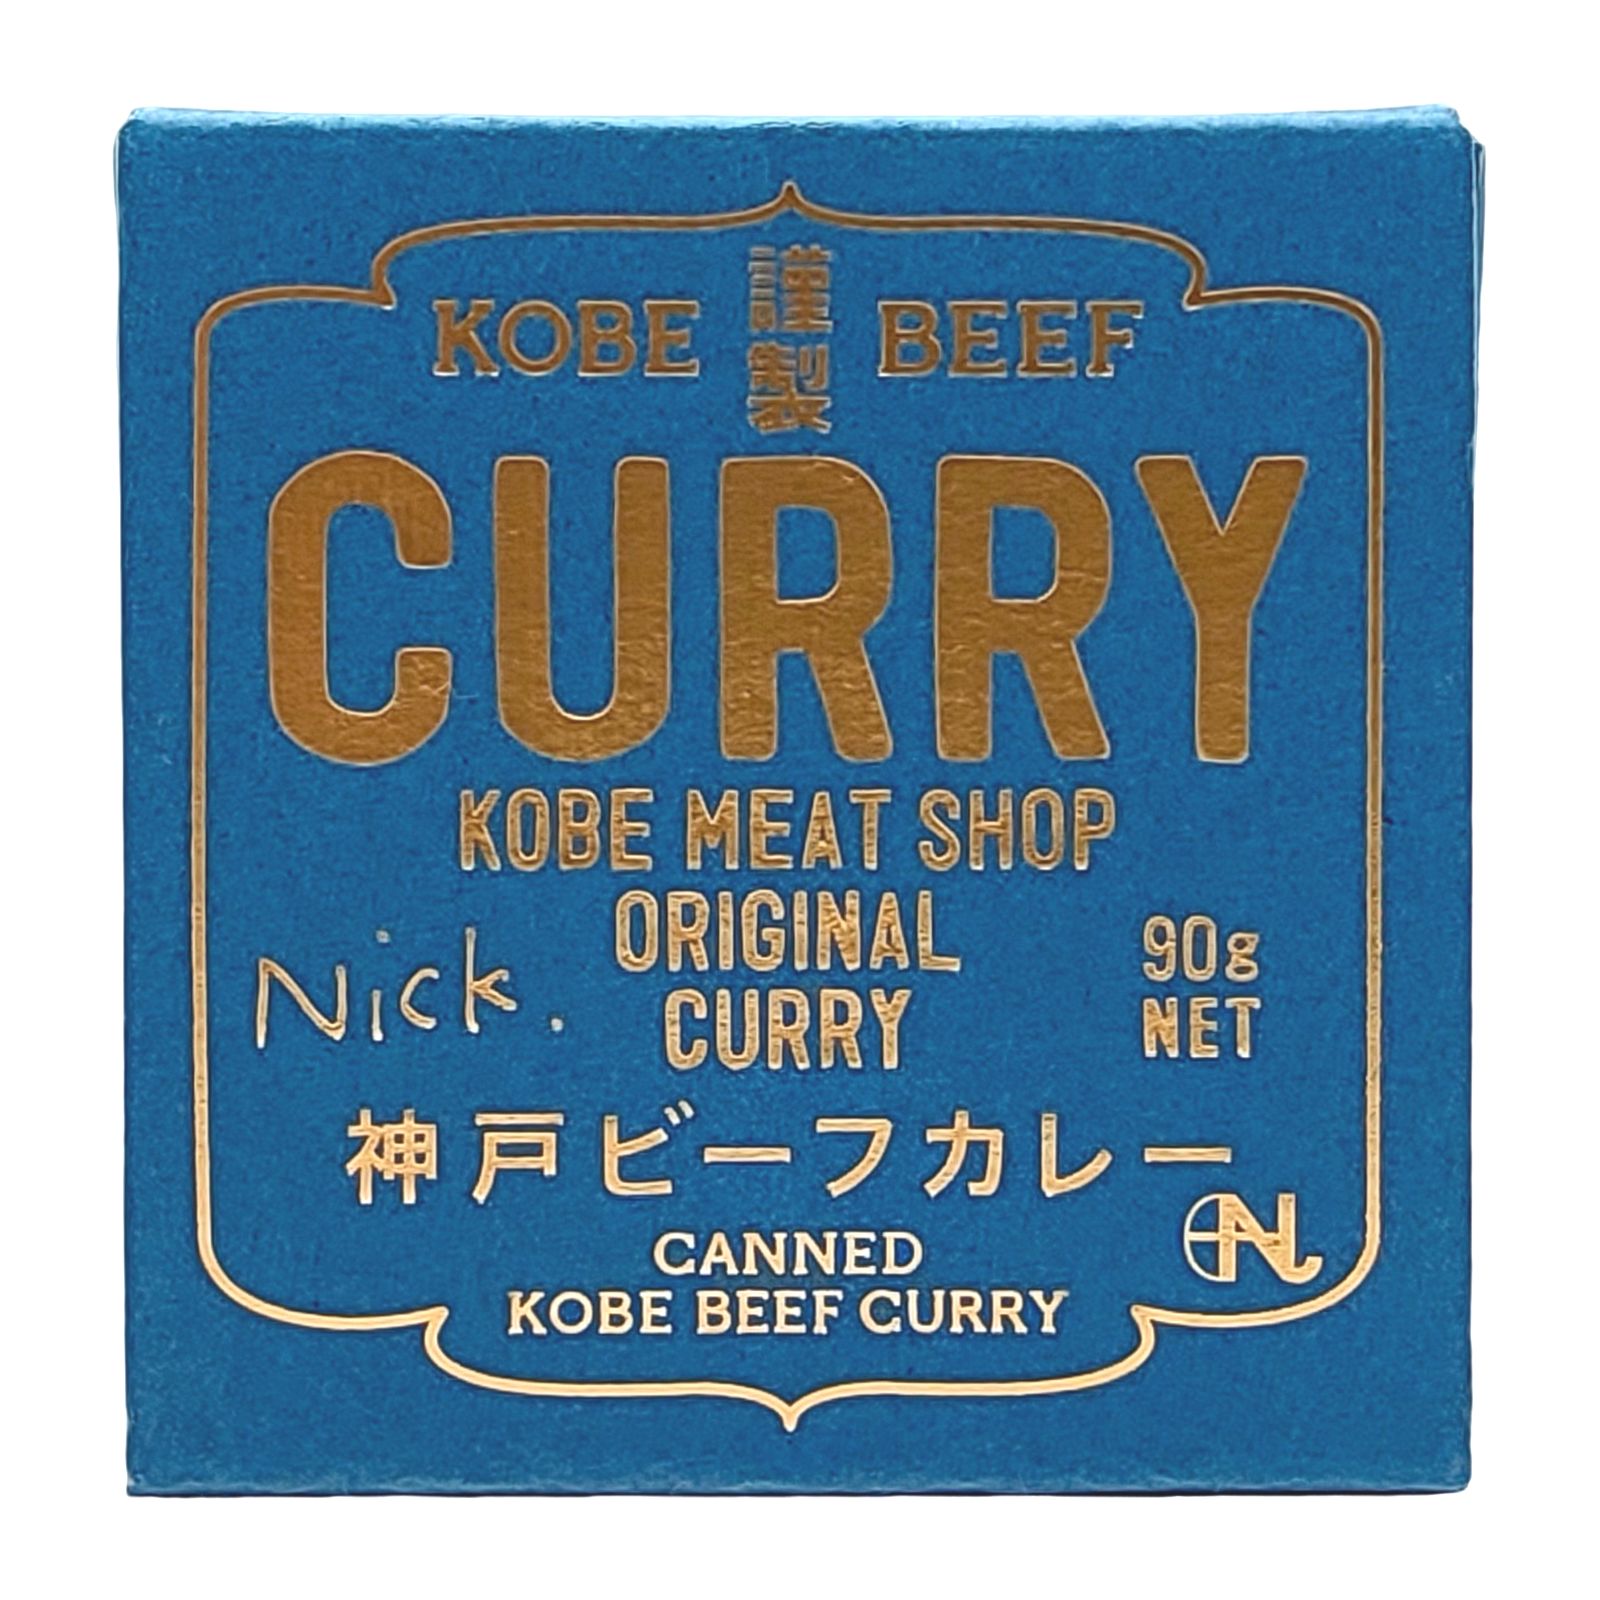 神戸ビーフのカレー缶詰 画像7